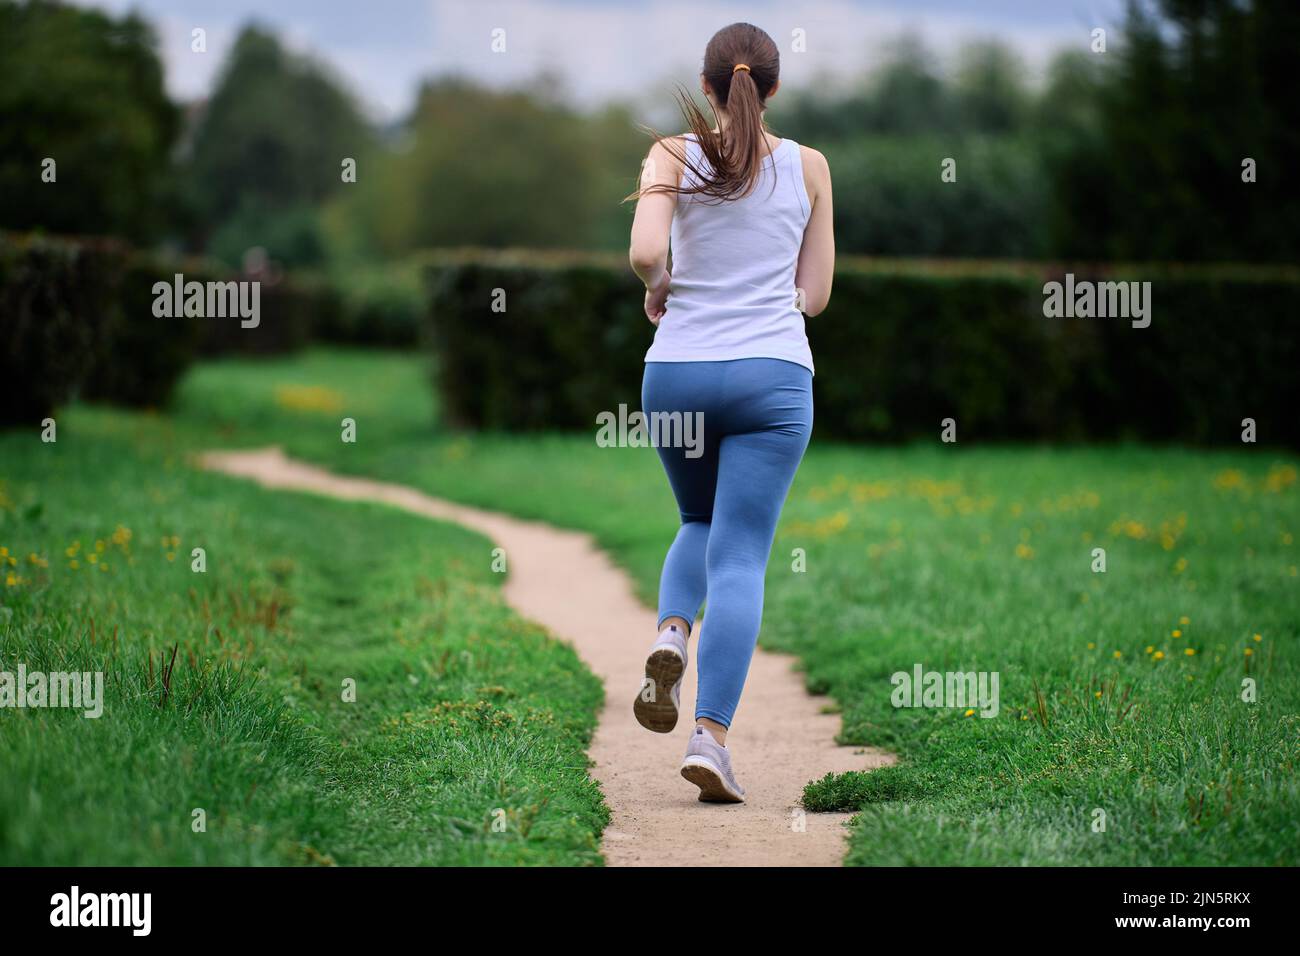 Vista posterior de una corredora haciendo ejercicio en un parque público en verano. Foto de stock